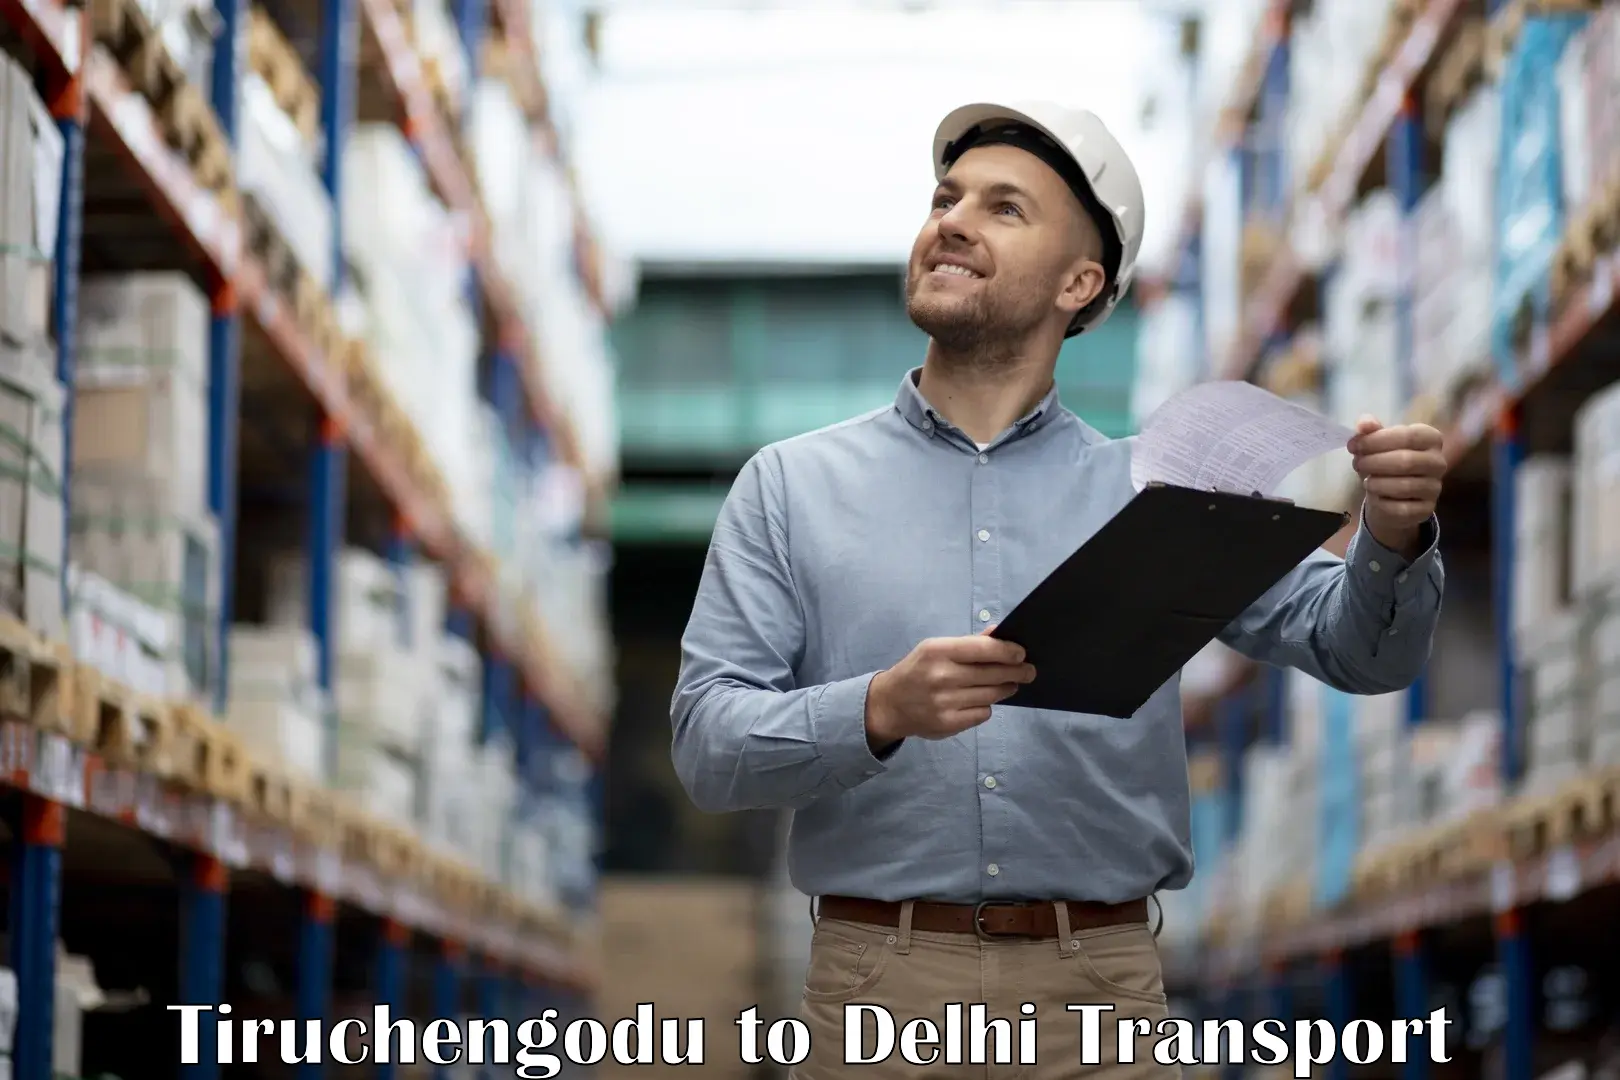 Intercity transport Tiruchengodu to Delhi